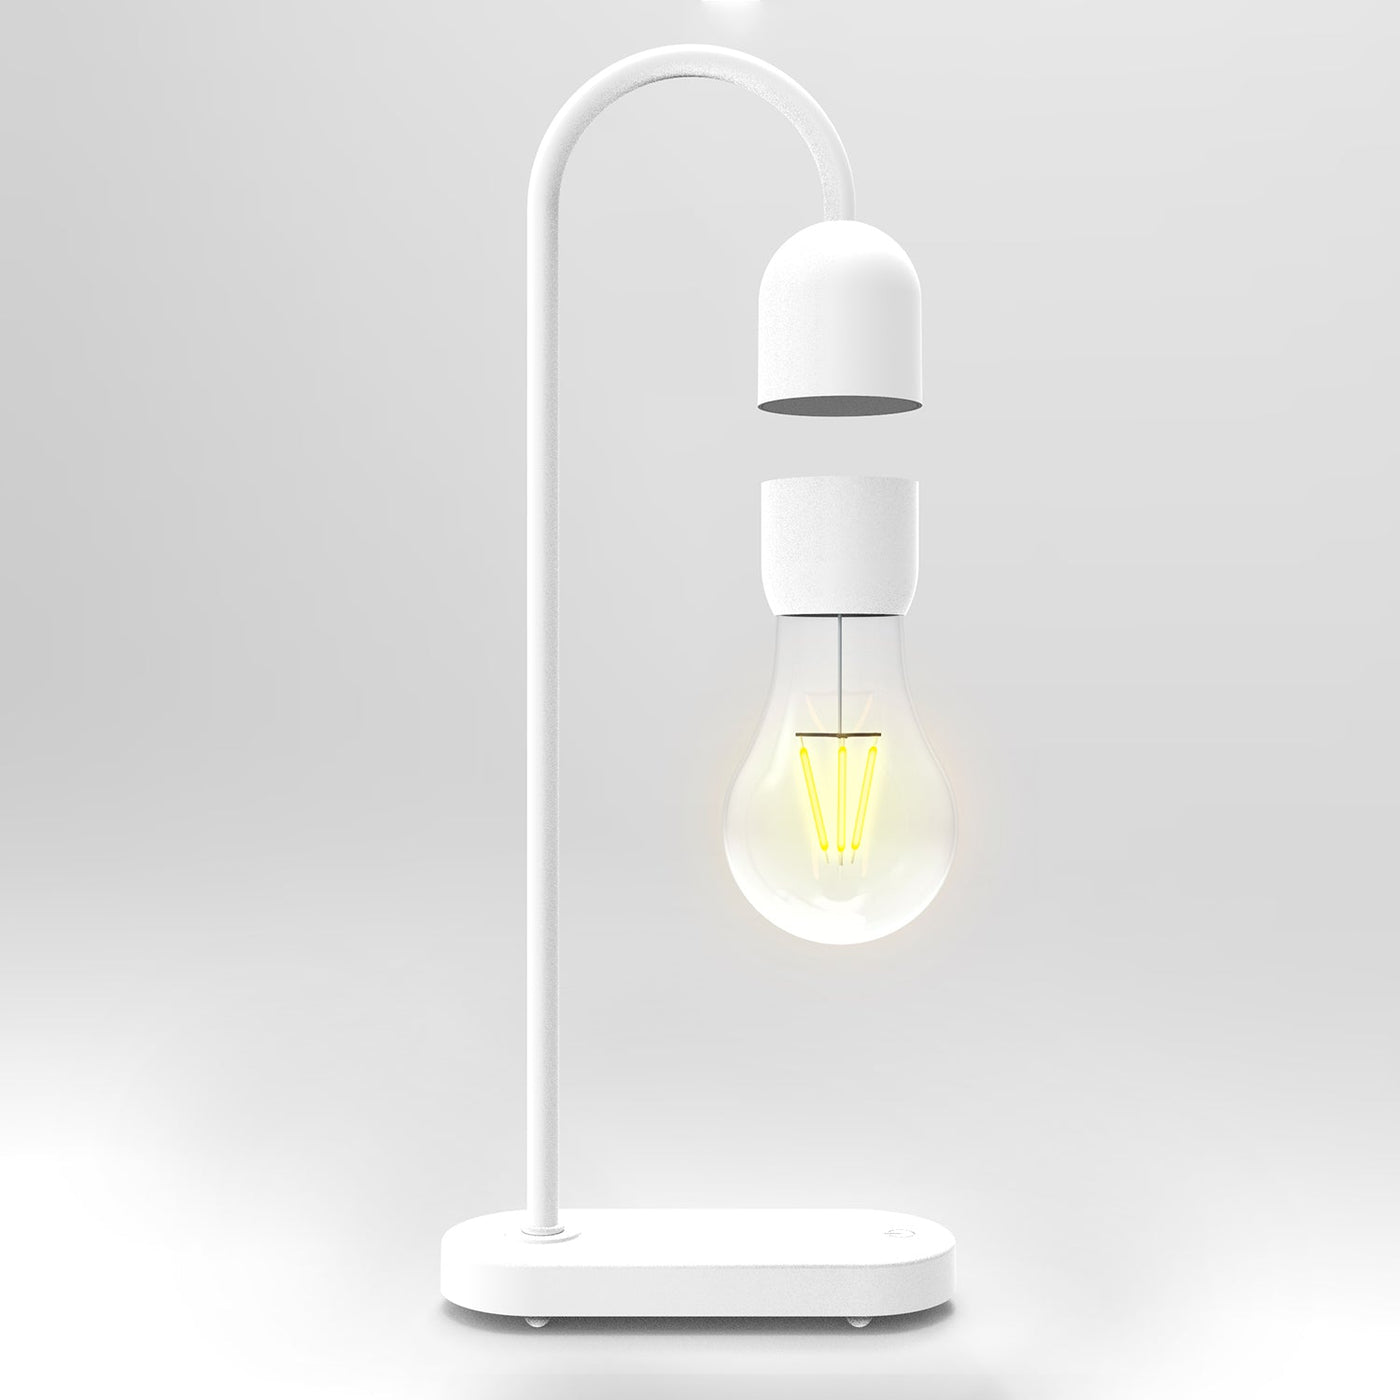 LANGTU Tisch-Schreibtisch-Smart-Lampe mit magnetschwebender, schwebender, kabelloser LED-Glühbirne, weiß